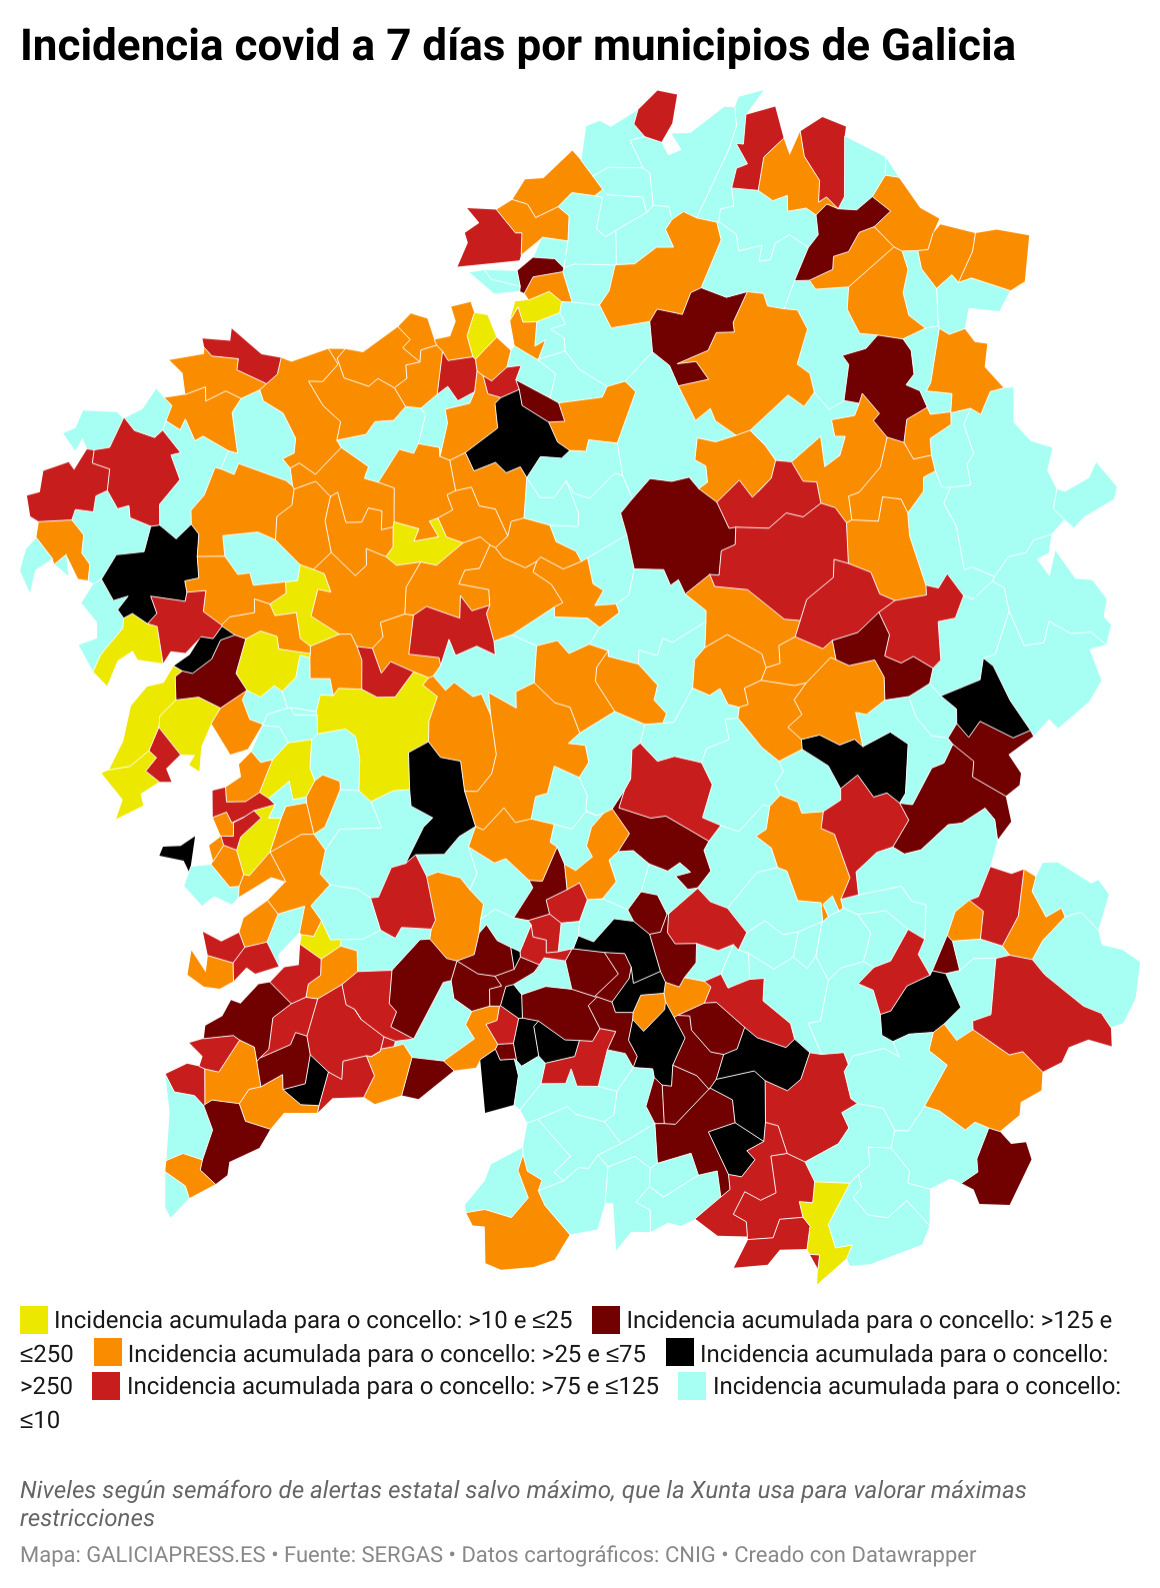 ClElv incidencia covid a 7 d as por municipios de galicia  (7)